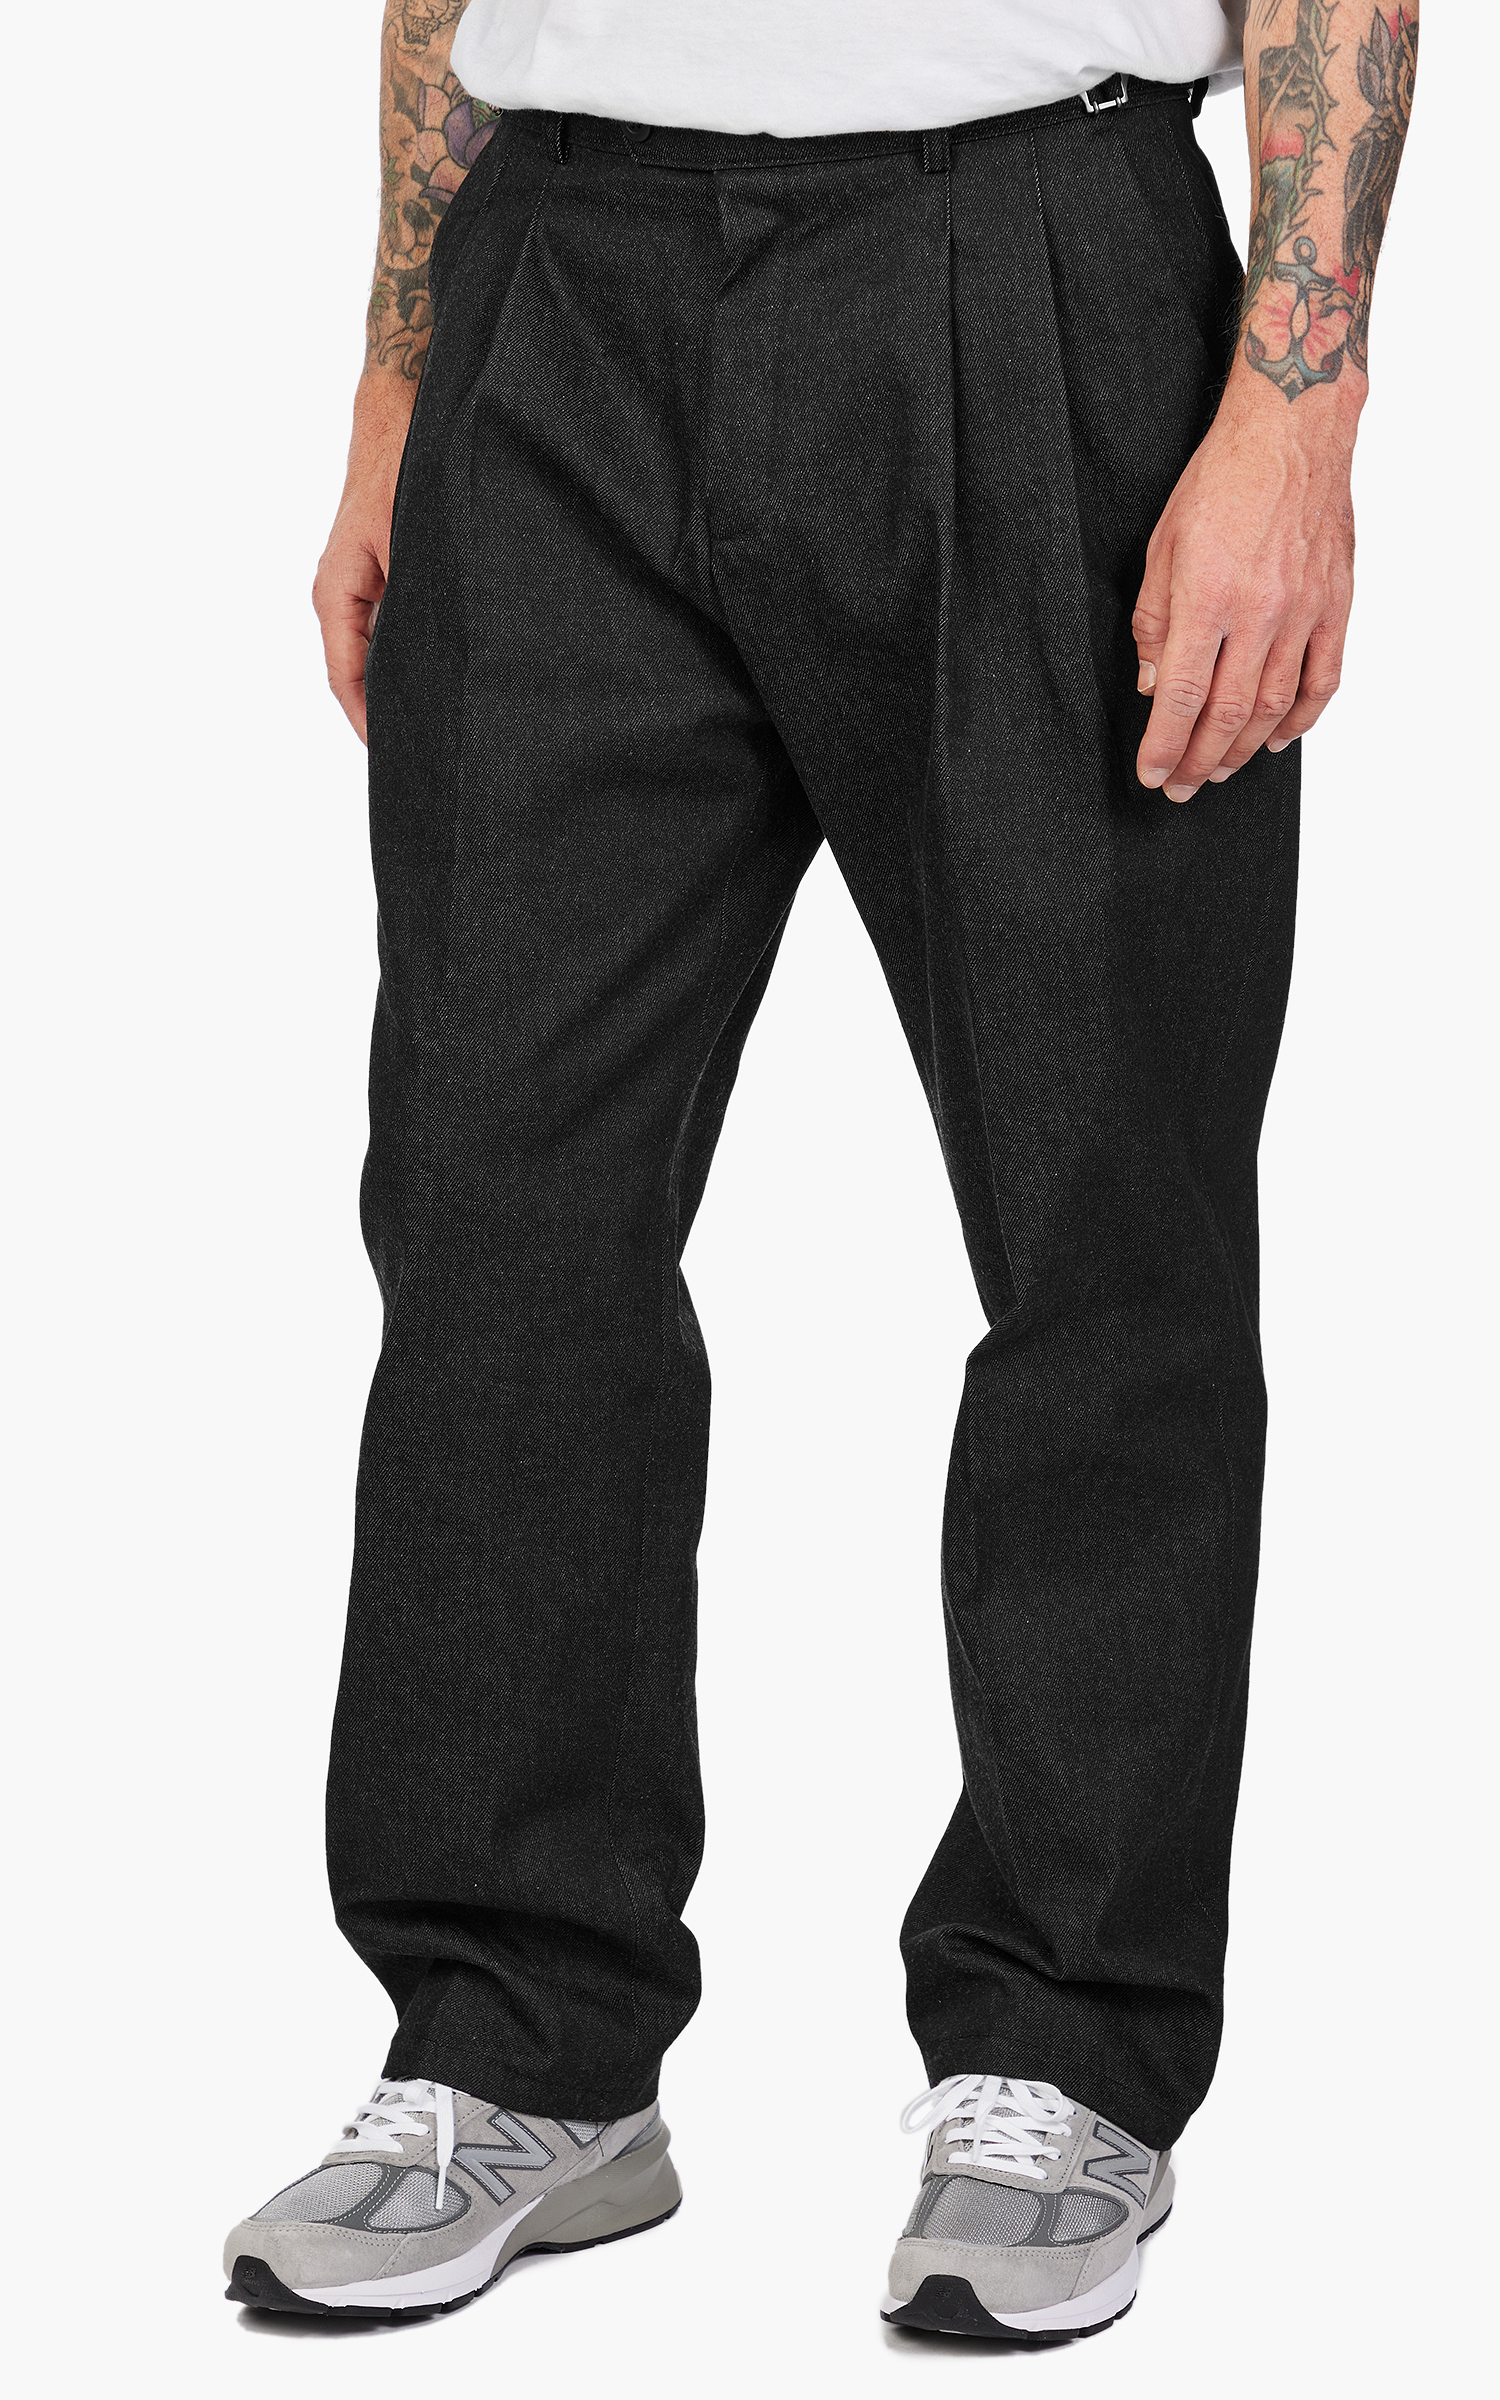 FrizmWORKS Side Adjust Two Tuck Denim Pants Black | Cultizm